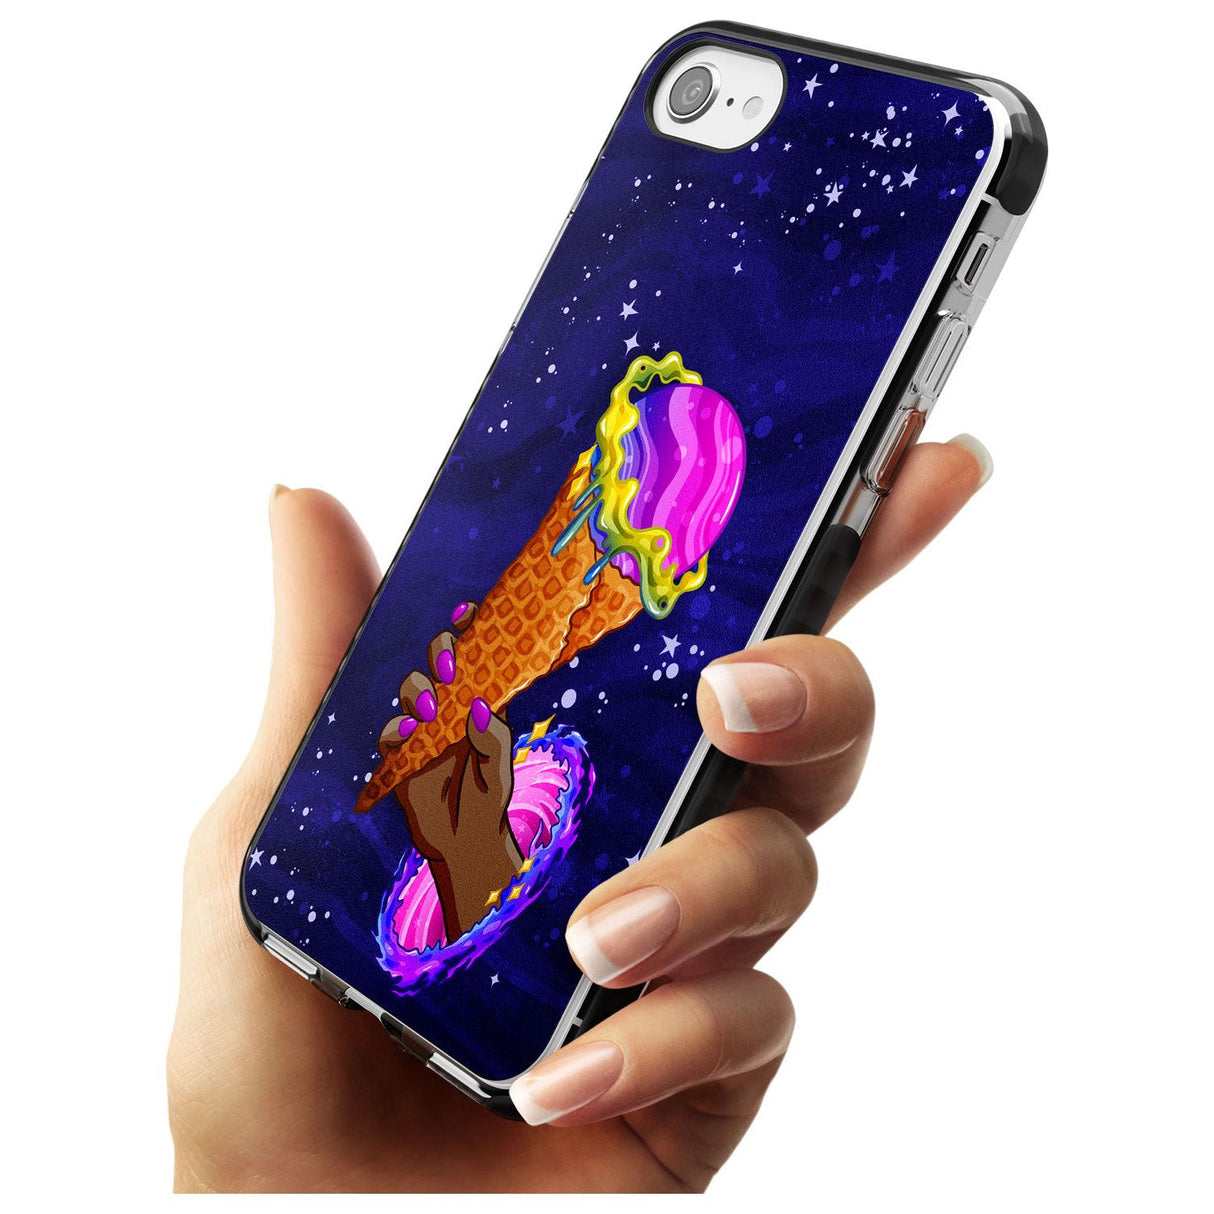 Interdimensional Ice Cream Black Impact Phone Case for iPhone SE 8 7 Plus